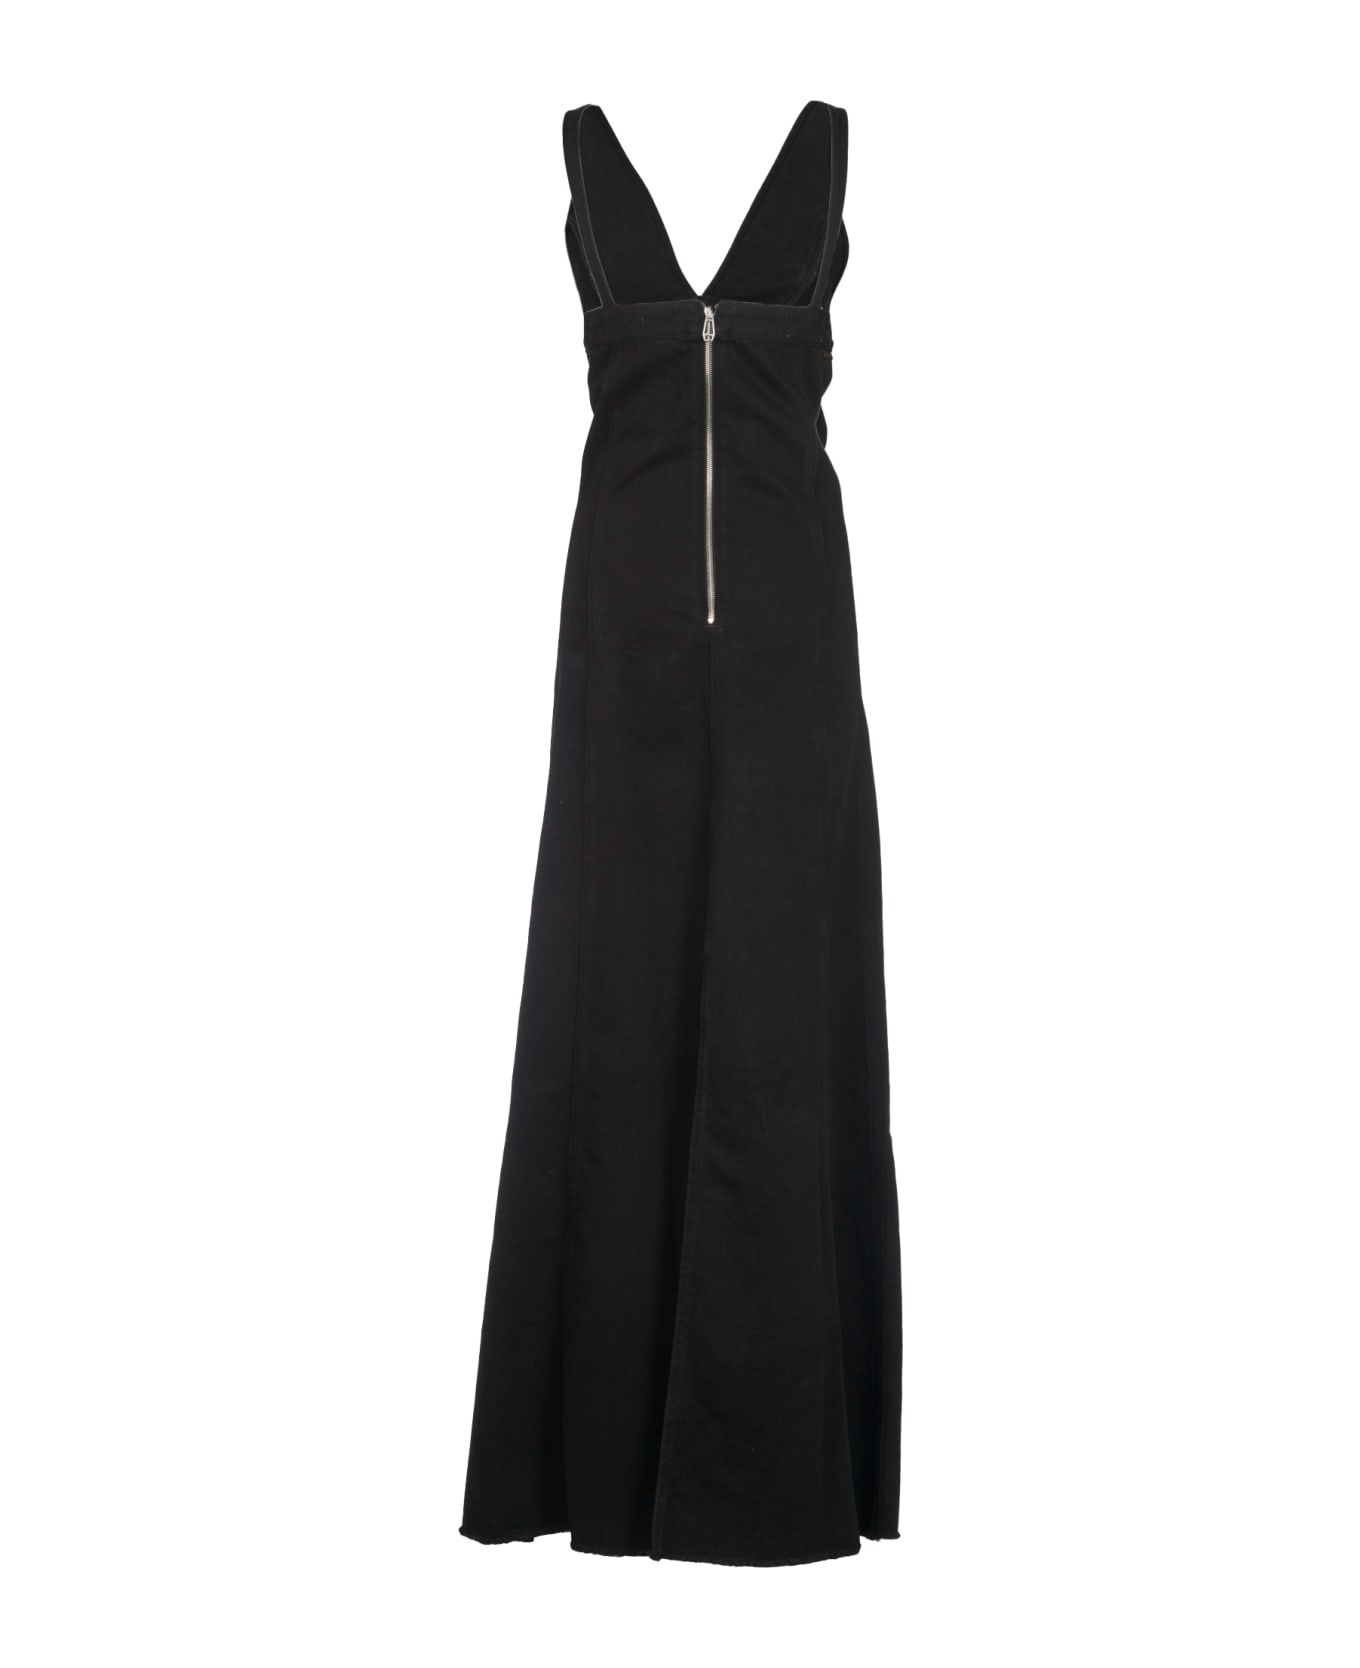 Haikure V-neck Sleeveless Dress - Black